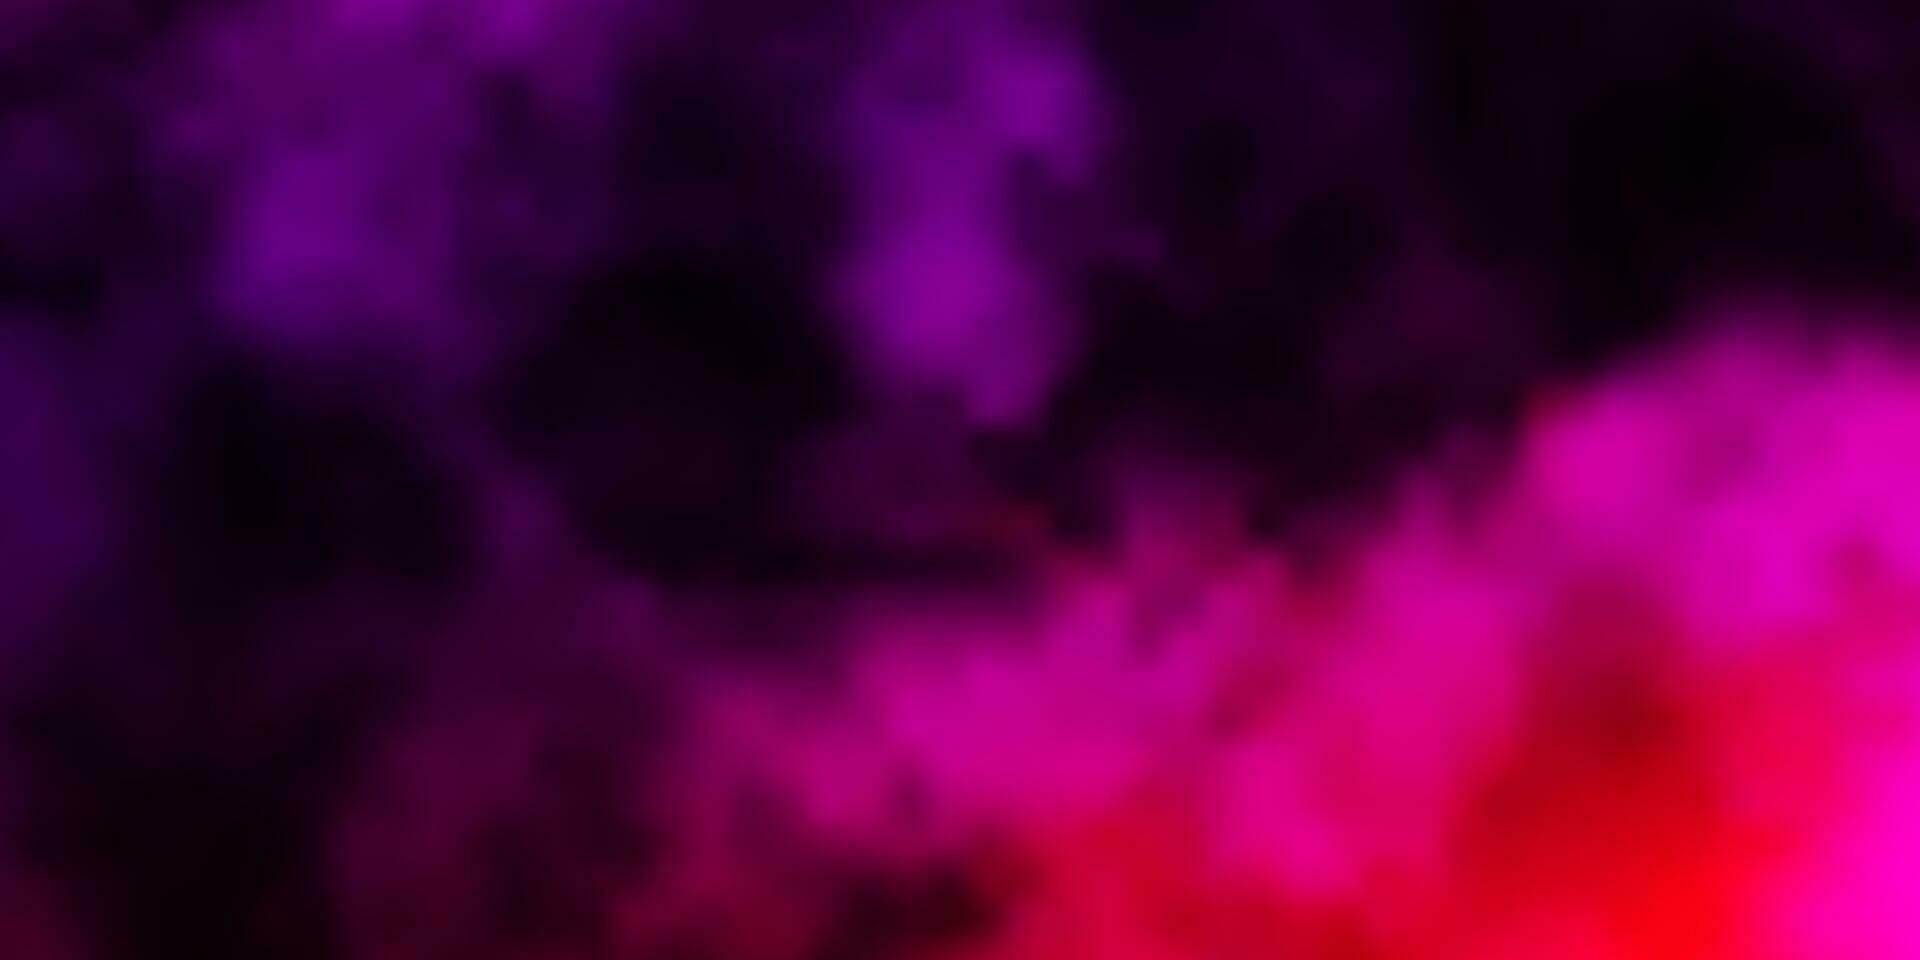 struttura di vettore viola, rosa scuro con cielo nuvoloso.